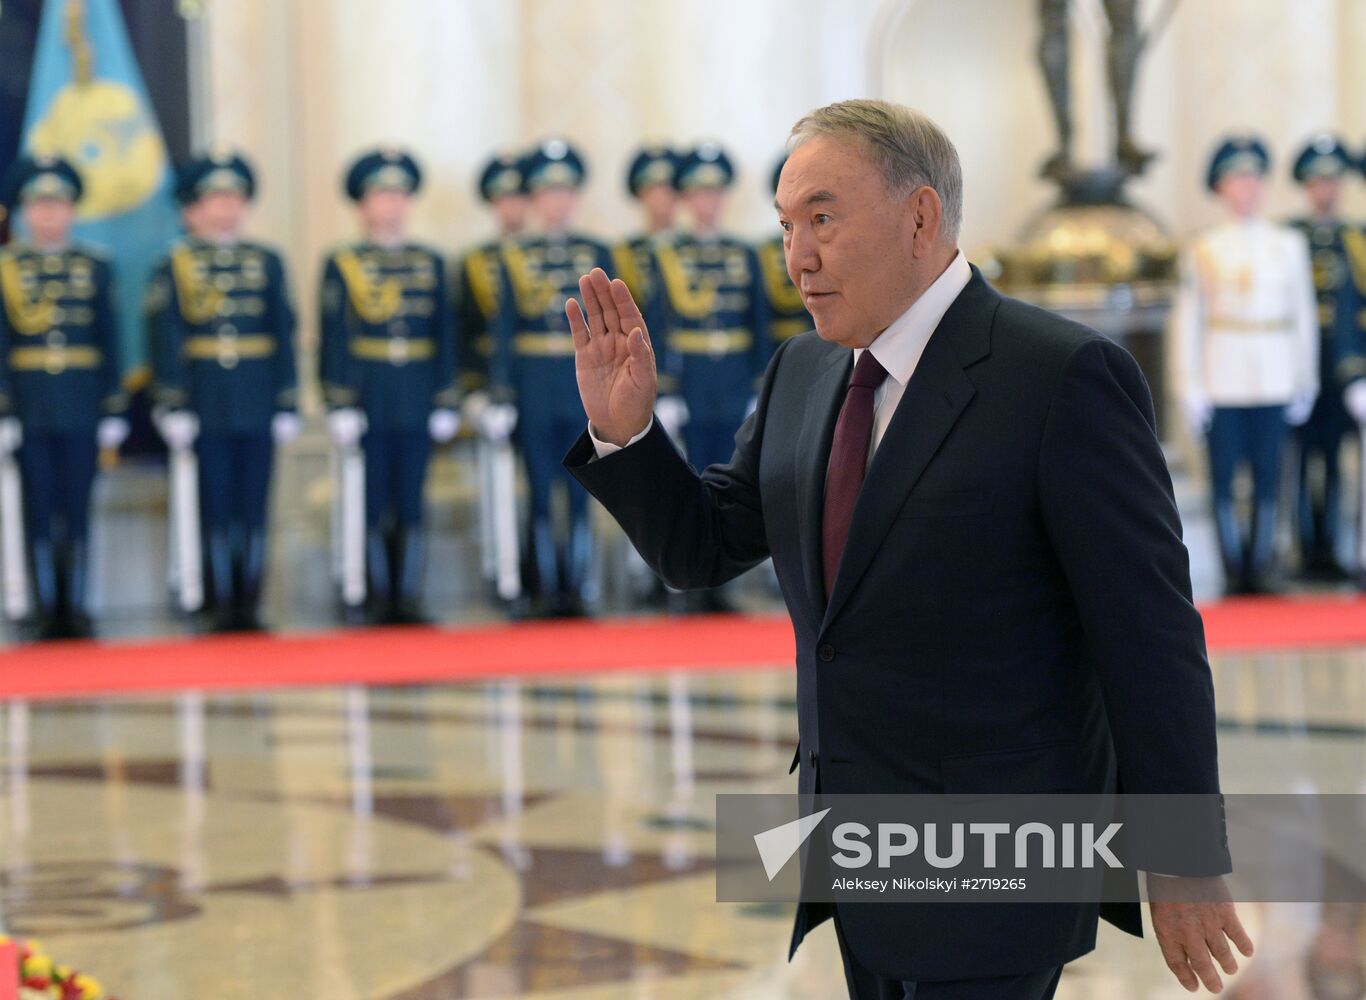 President Vladimir Putin's visit to Kazakhstan